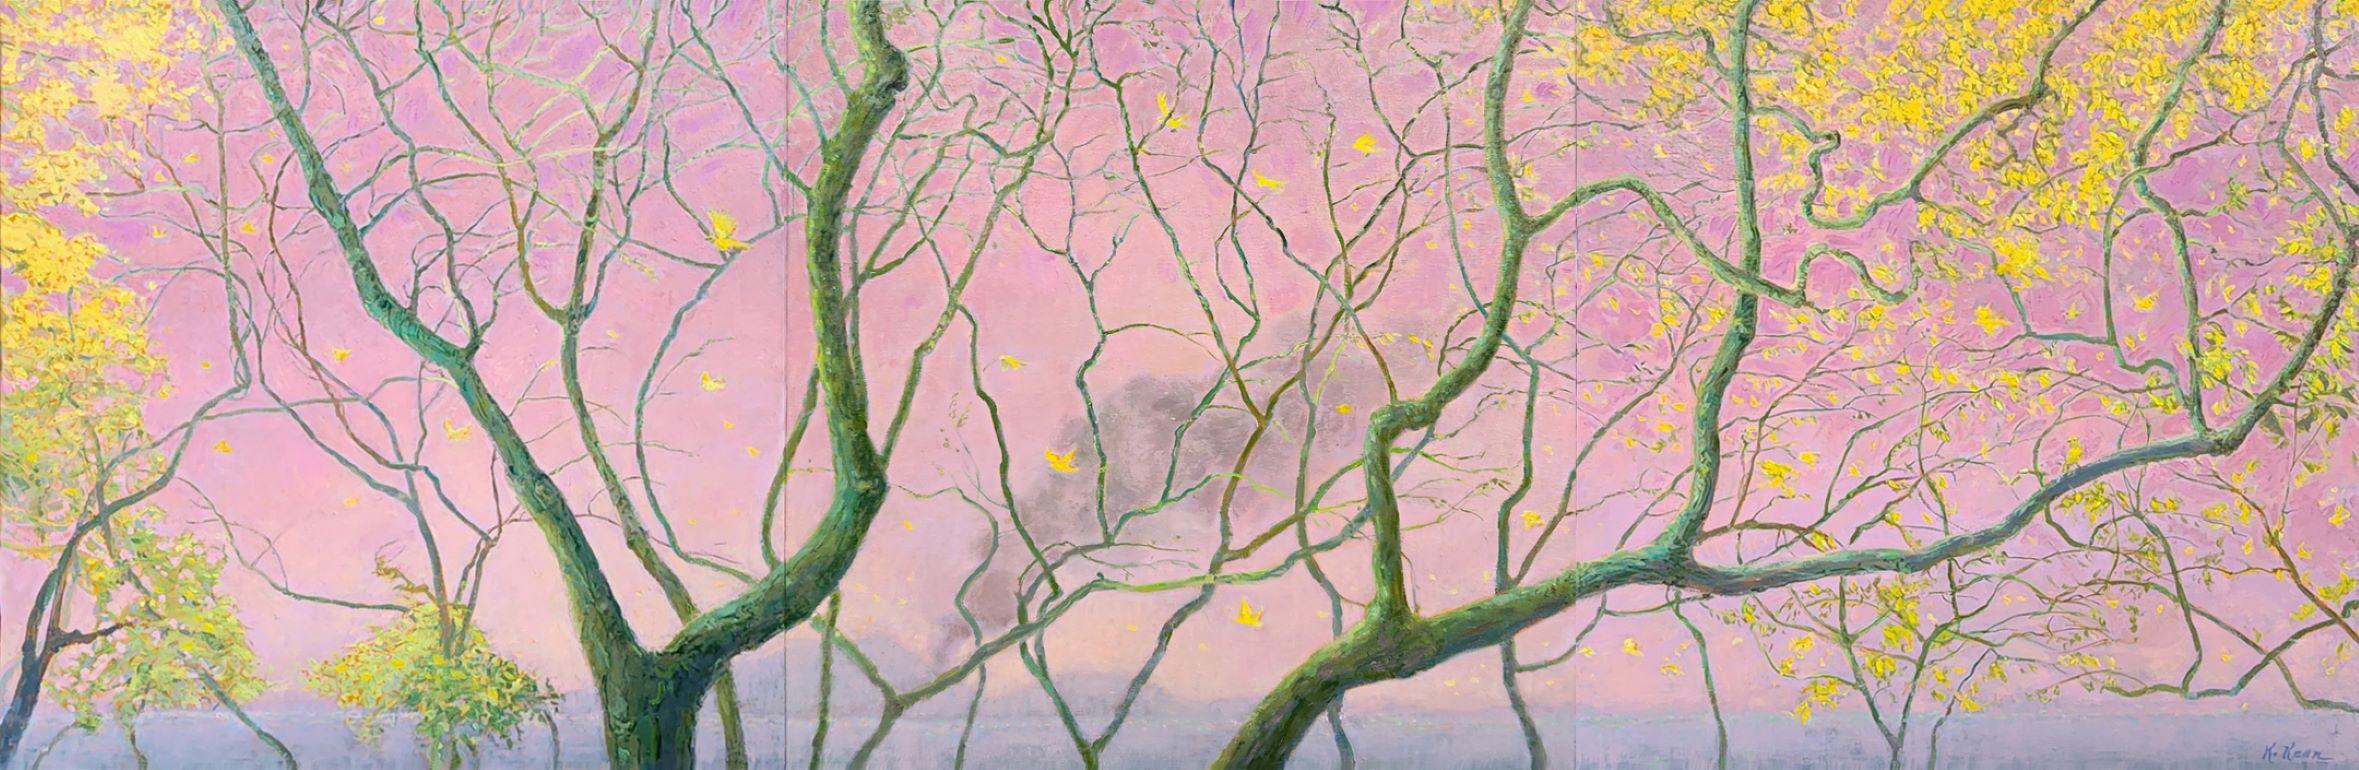 Where Yellow Birds Fly Across Pink Skies Triptychon Zeitgenössische Landschaft – Painting von Katherine Kean